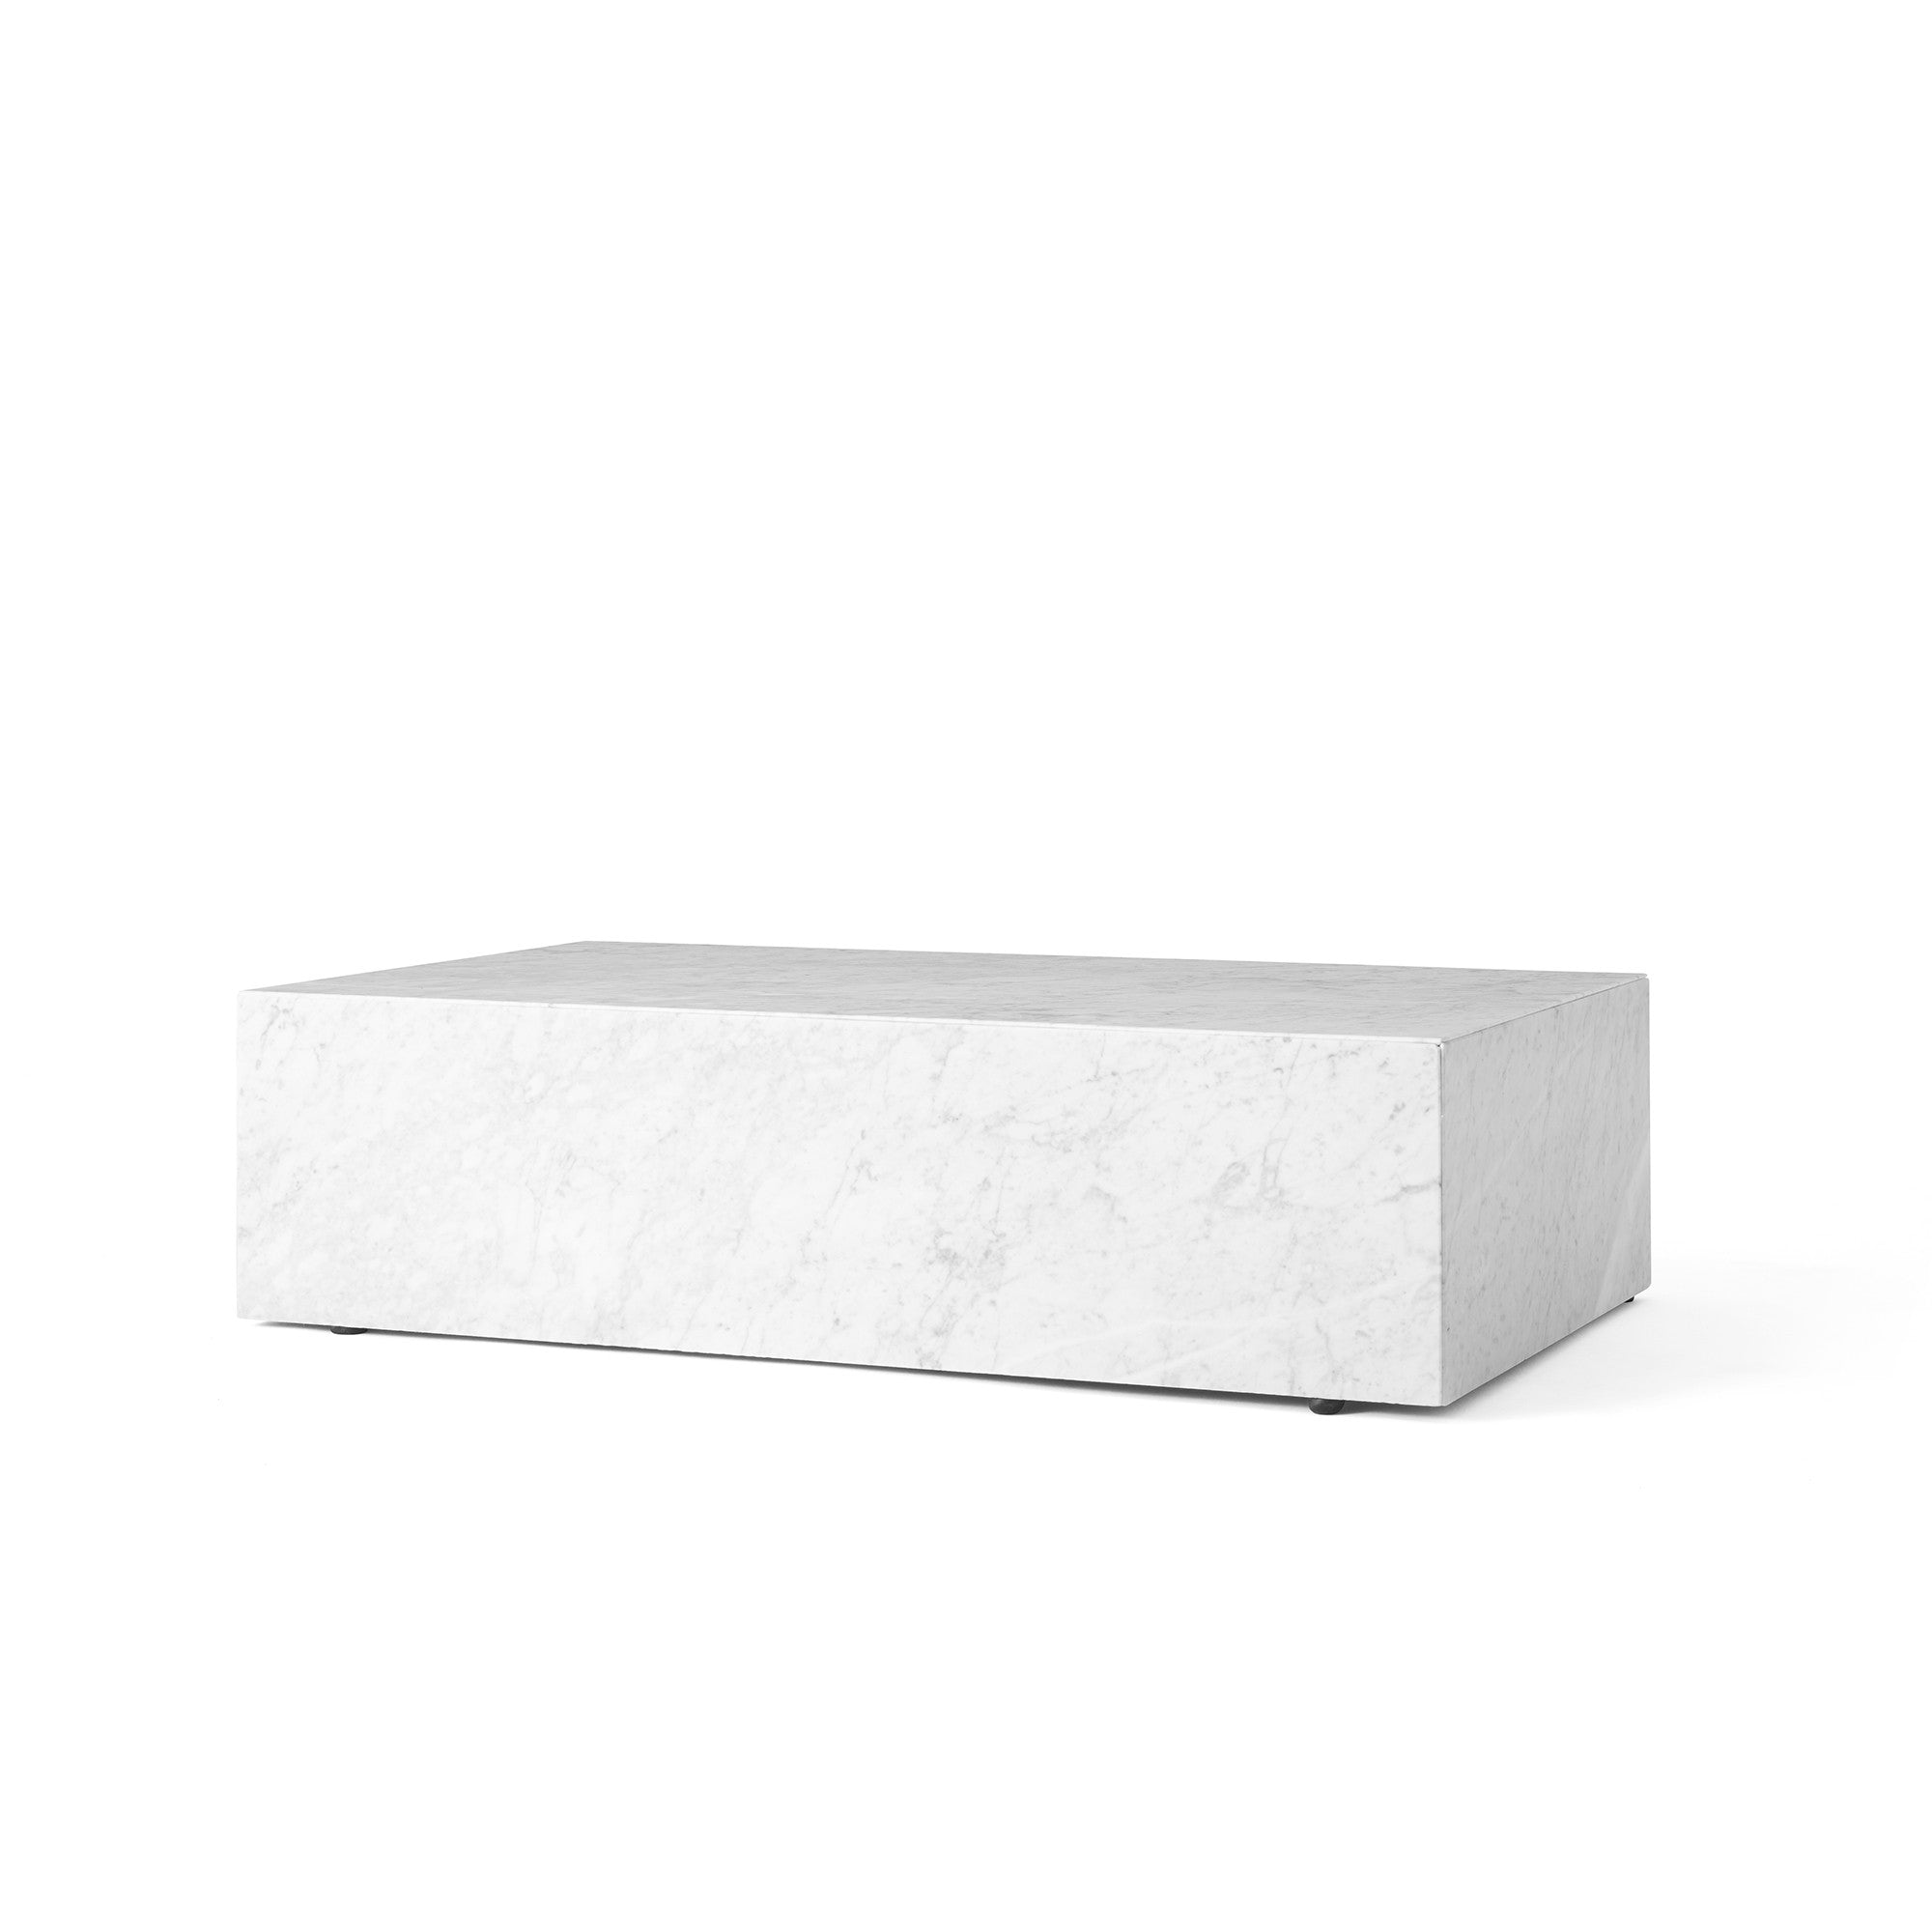 Plinth măsuță rectangulară joasă